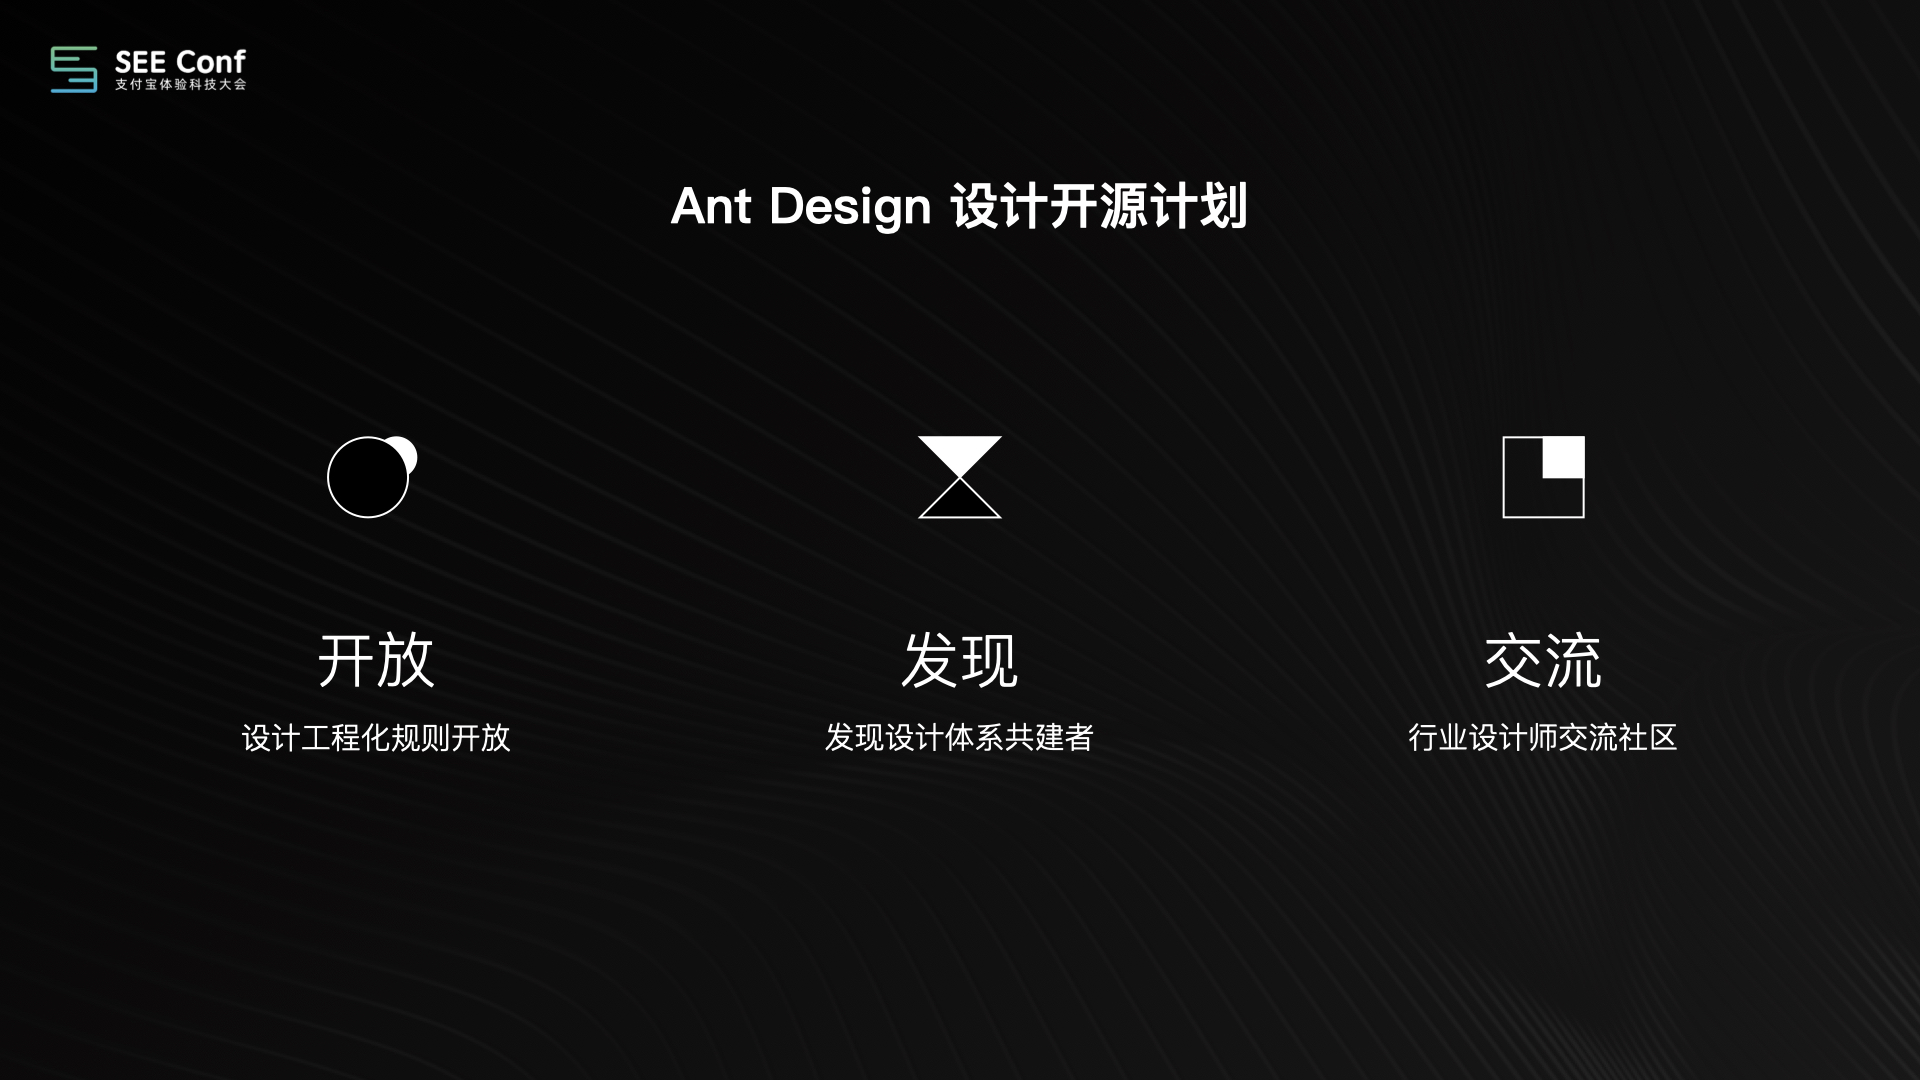 Ant Design 设计工程化0109正式版.086.jpeg